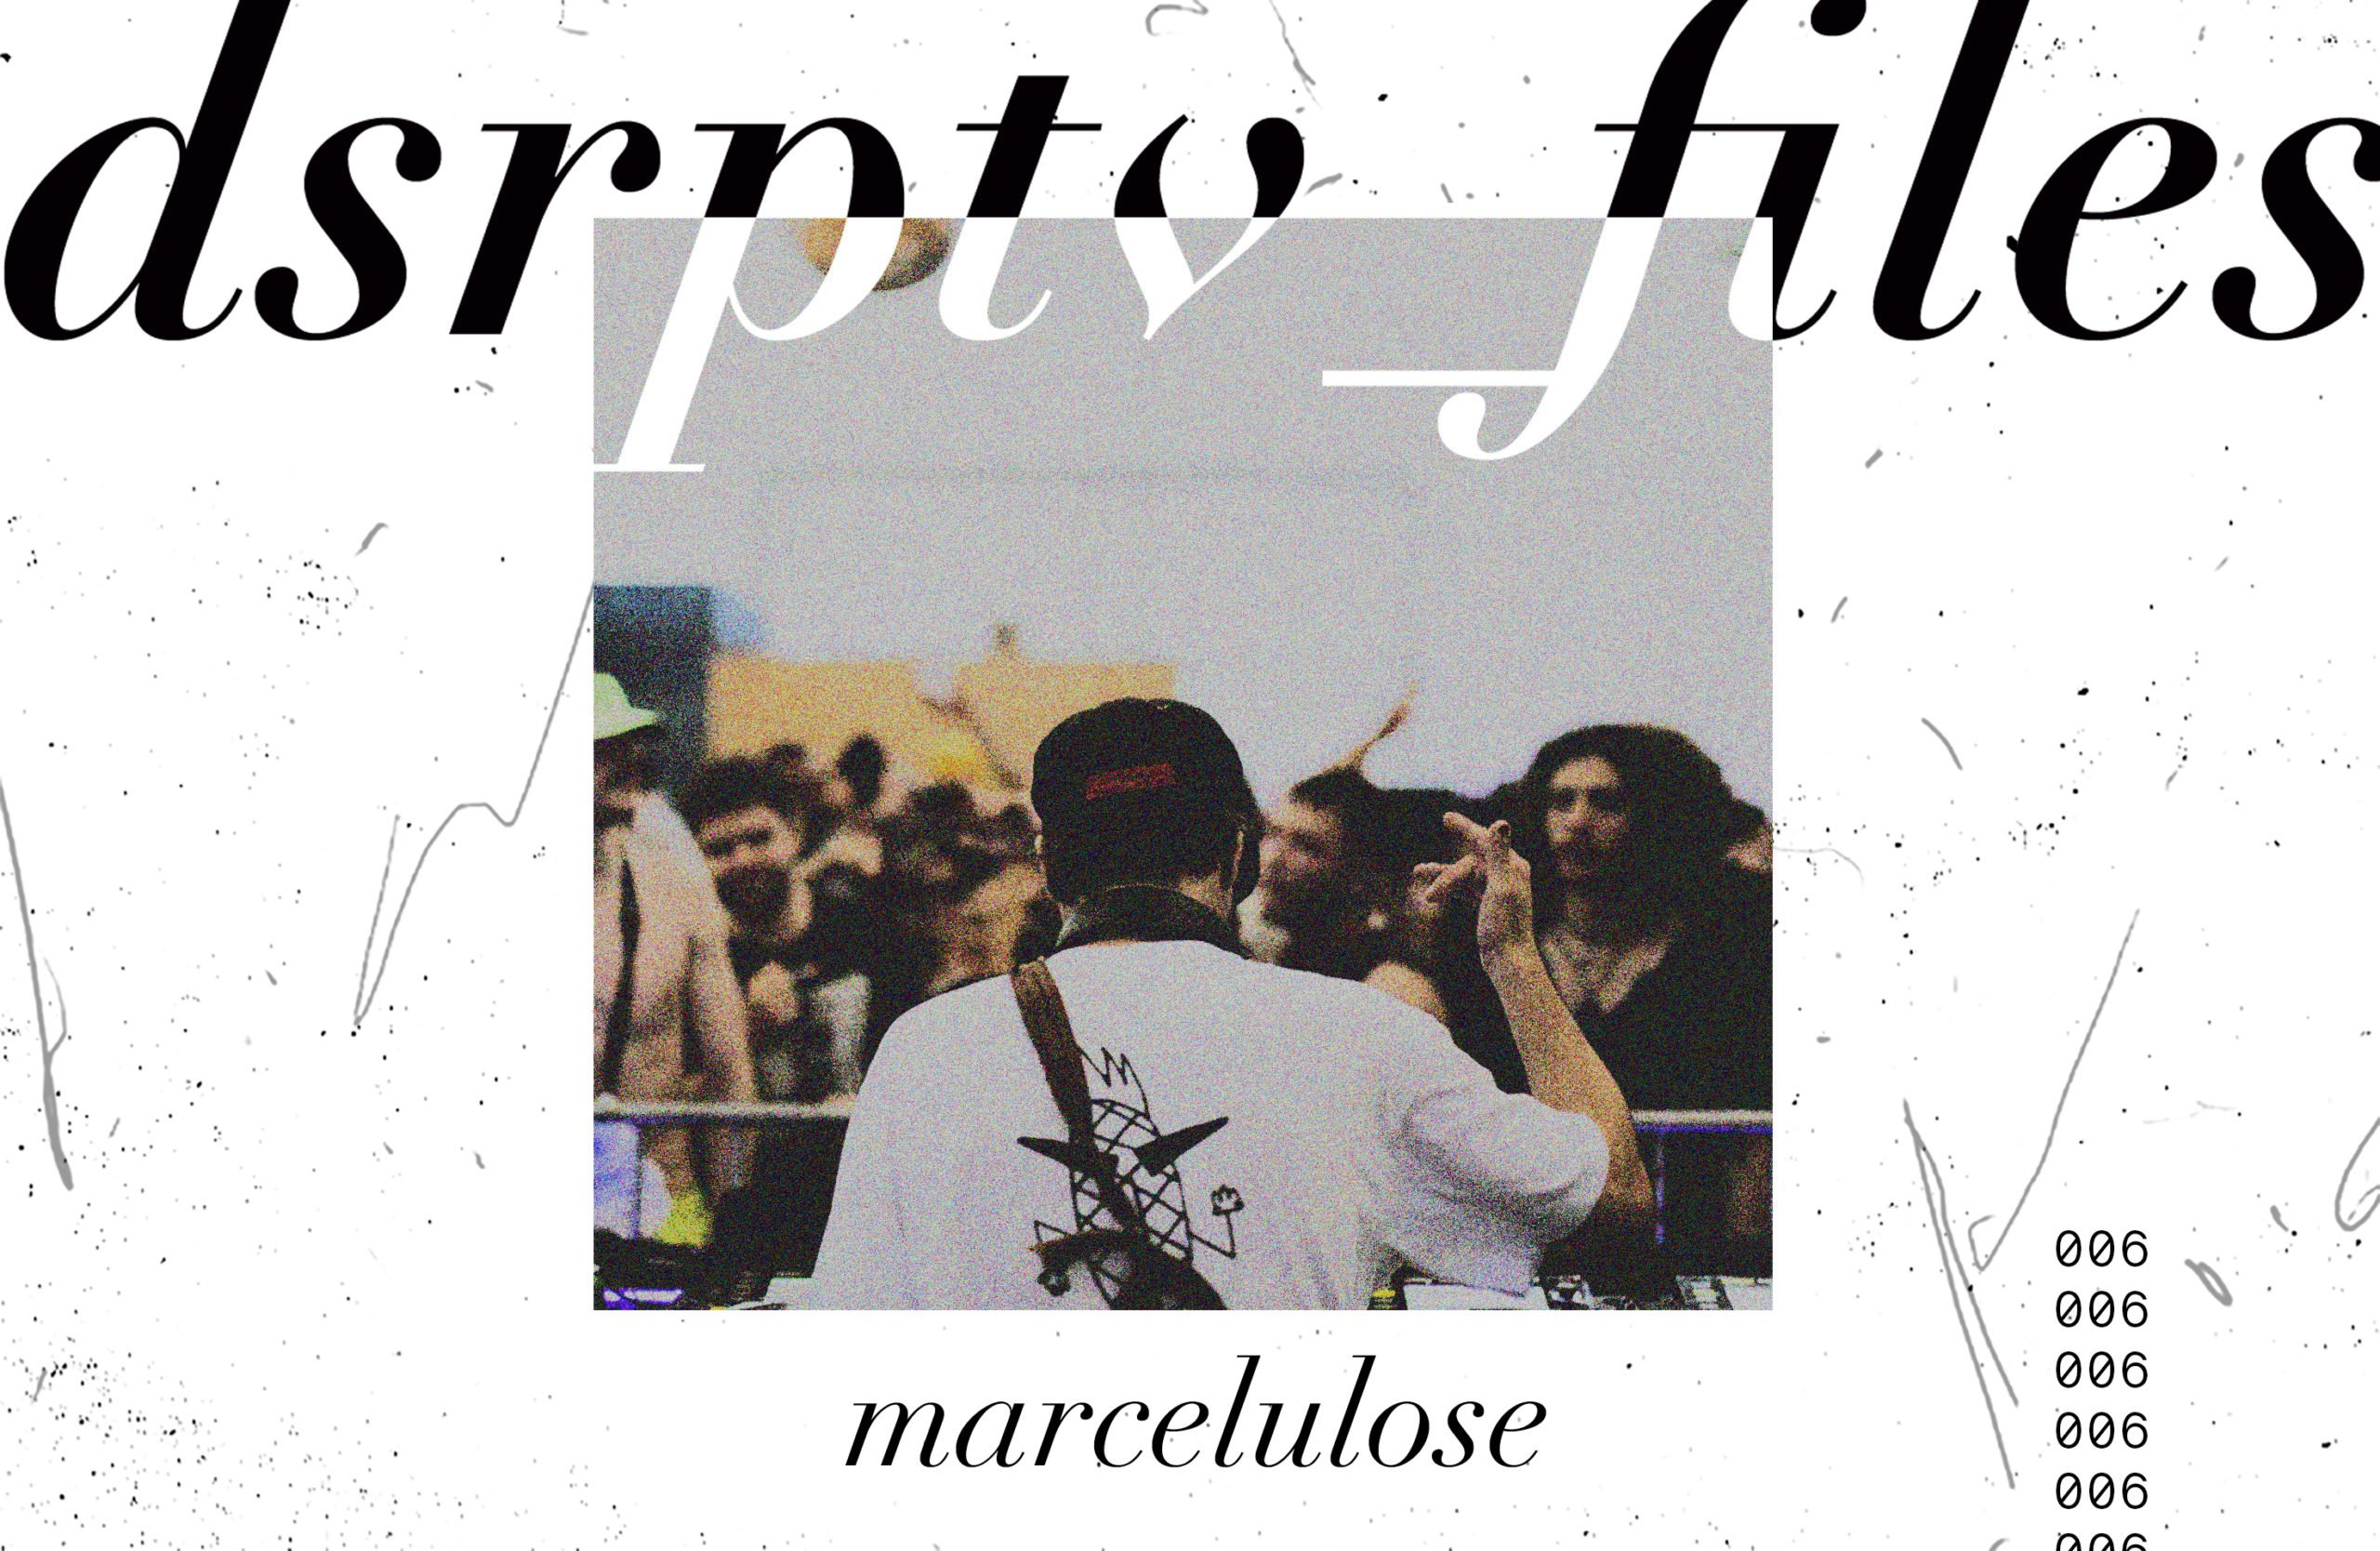 dsrptv_files – Marcelulose